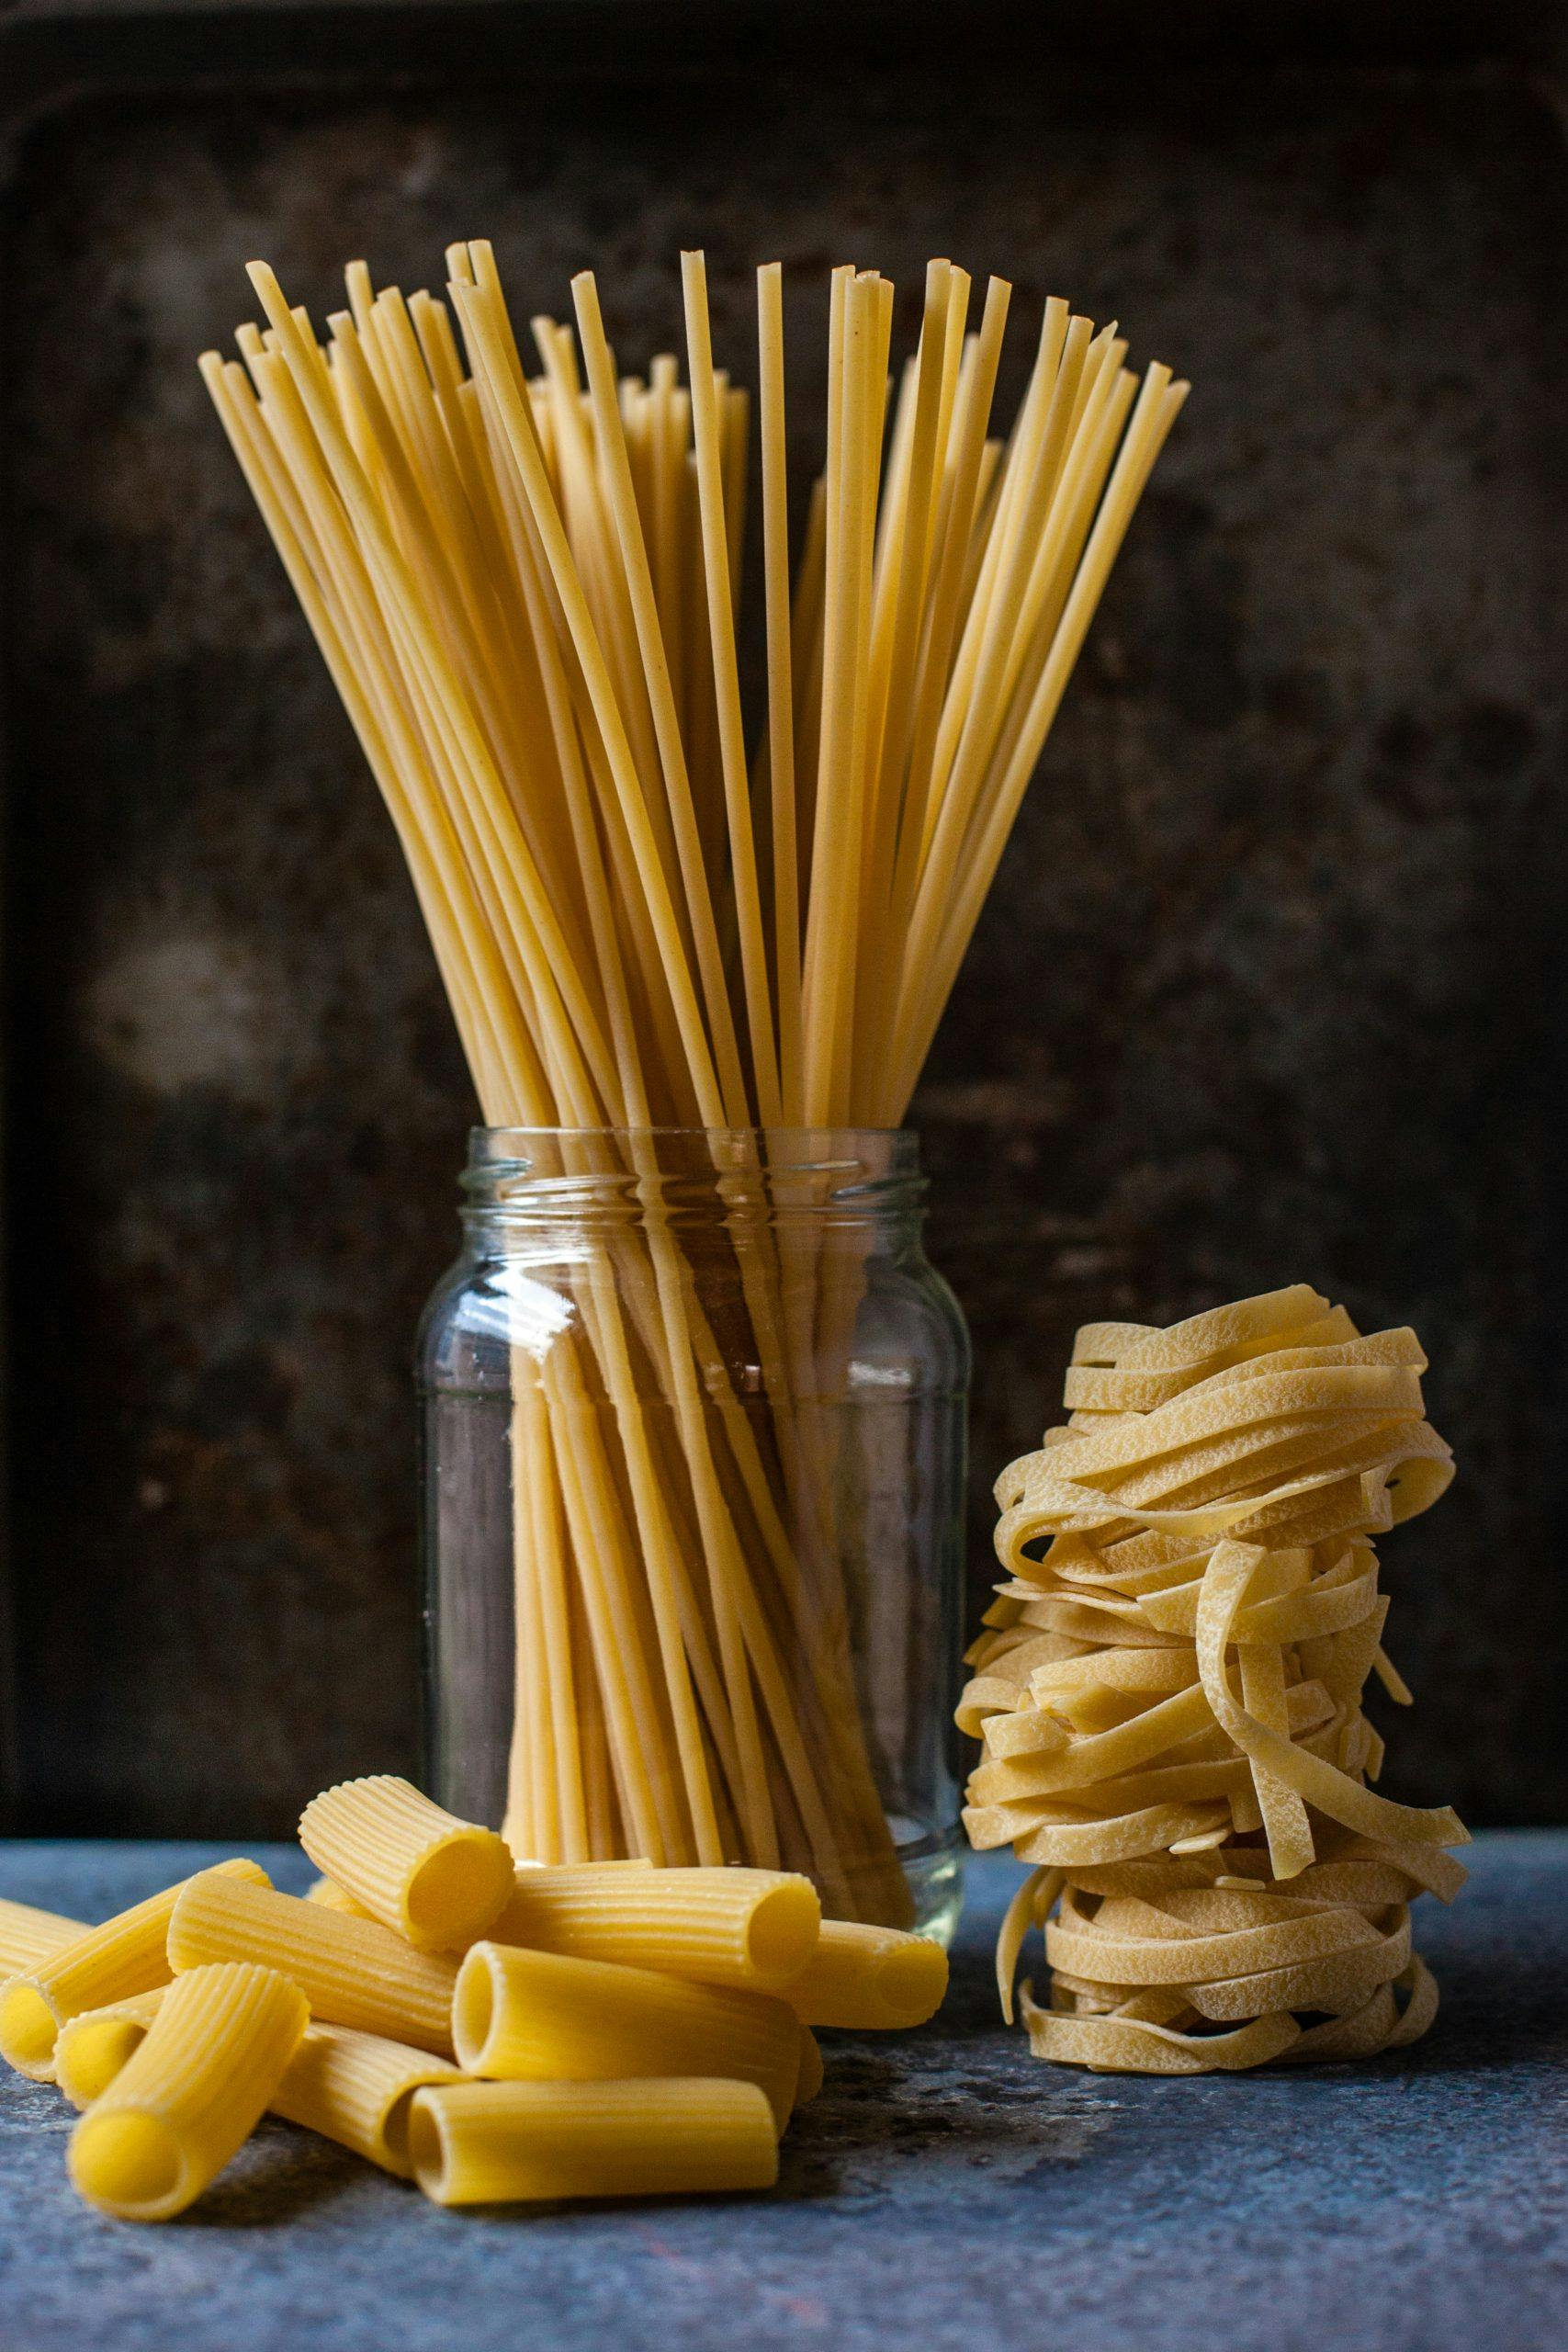 På världspastadagen äts pasta – basta! - DinVinguide